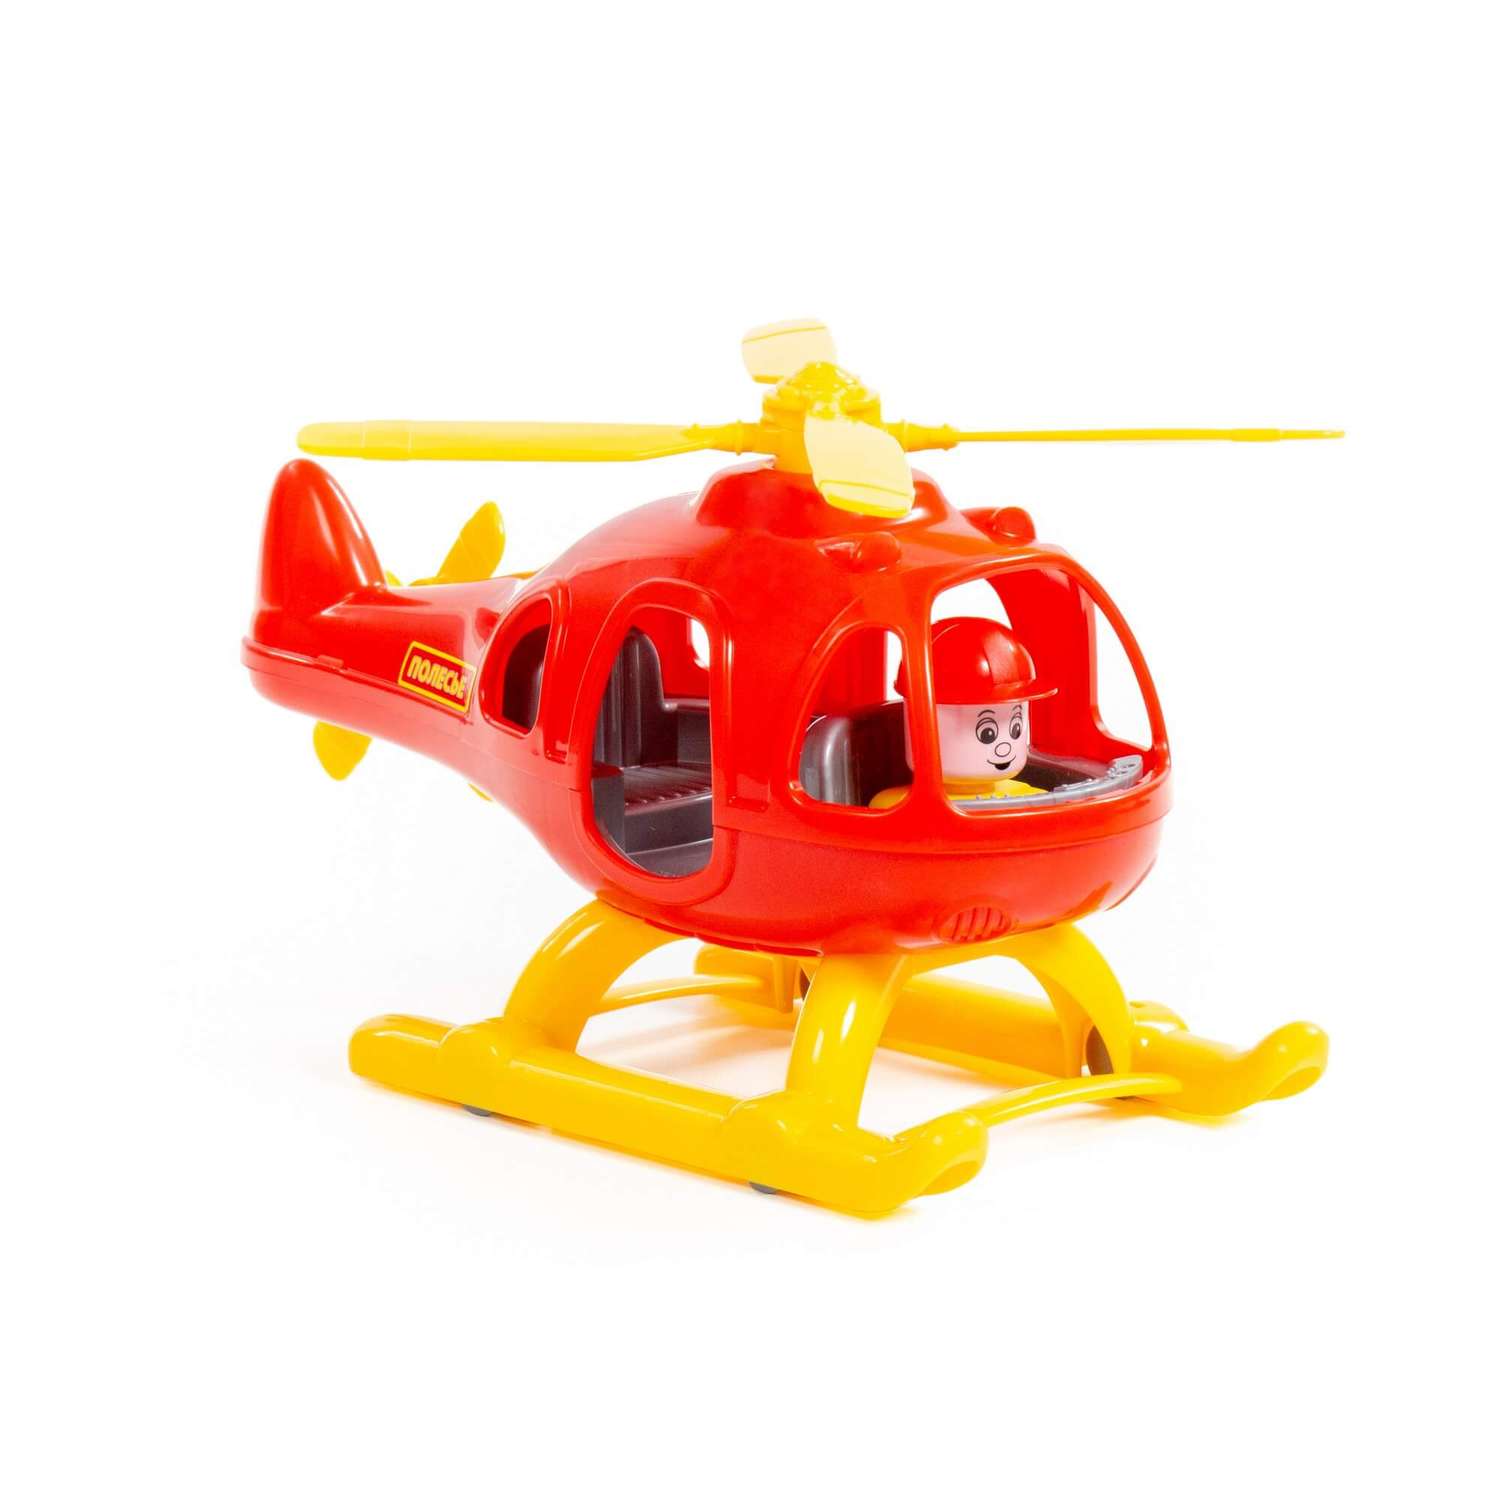 Вертолет Полесье Шмель красно-жёлтой в коробке 67654/1 - фото 1